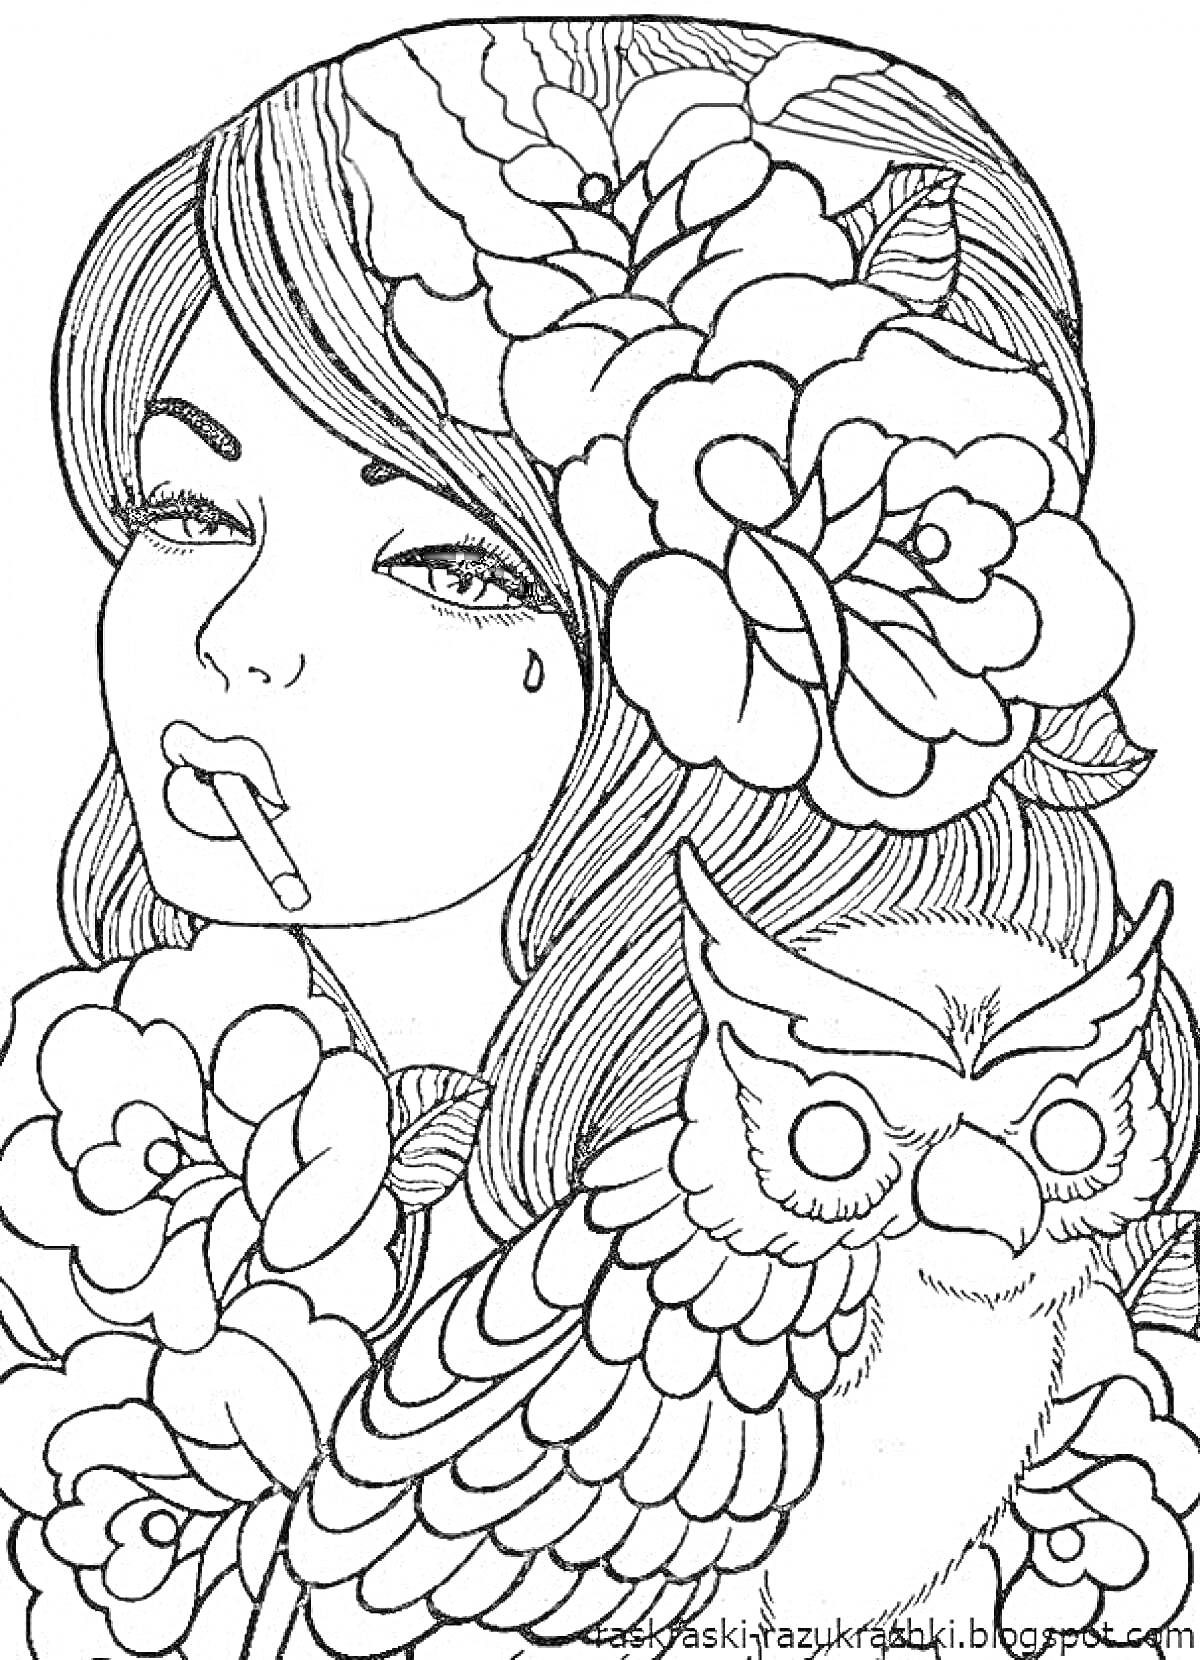 Девушка с сигаретой, окруженная цветами и совой